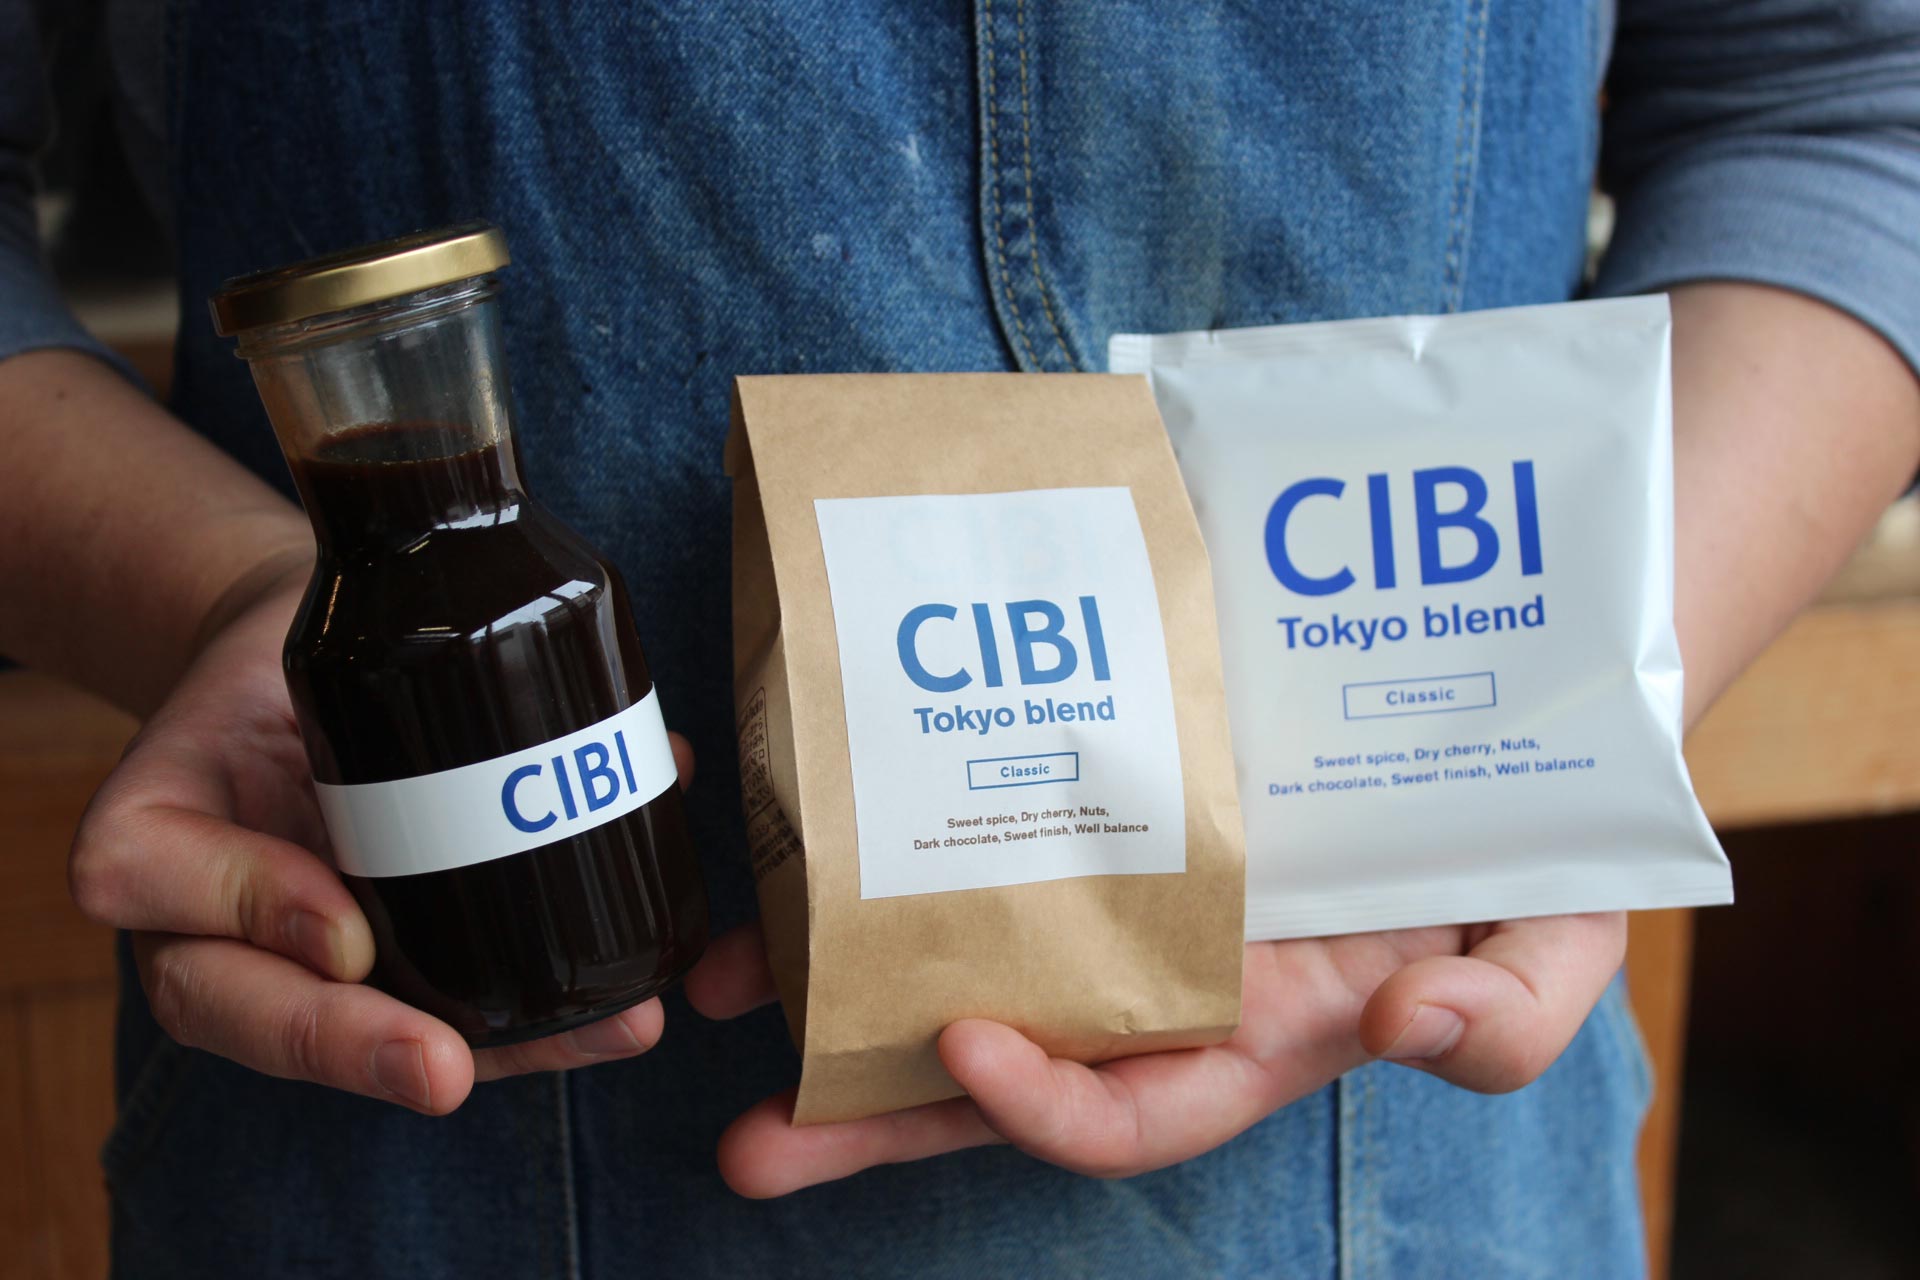 「CIBI」のオリジナルブレンドコーヒー